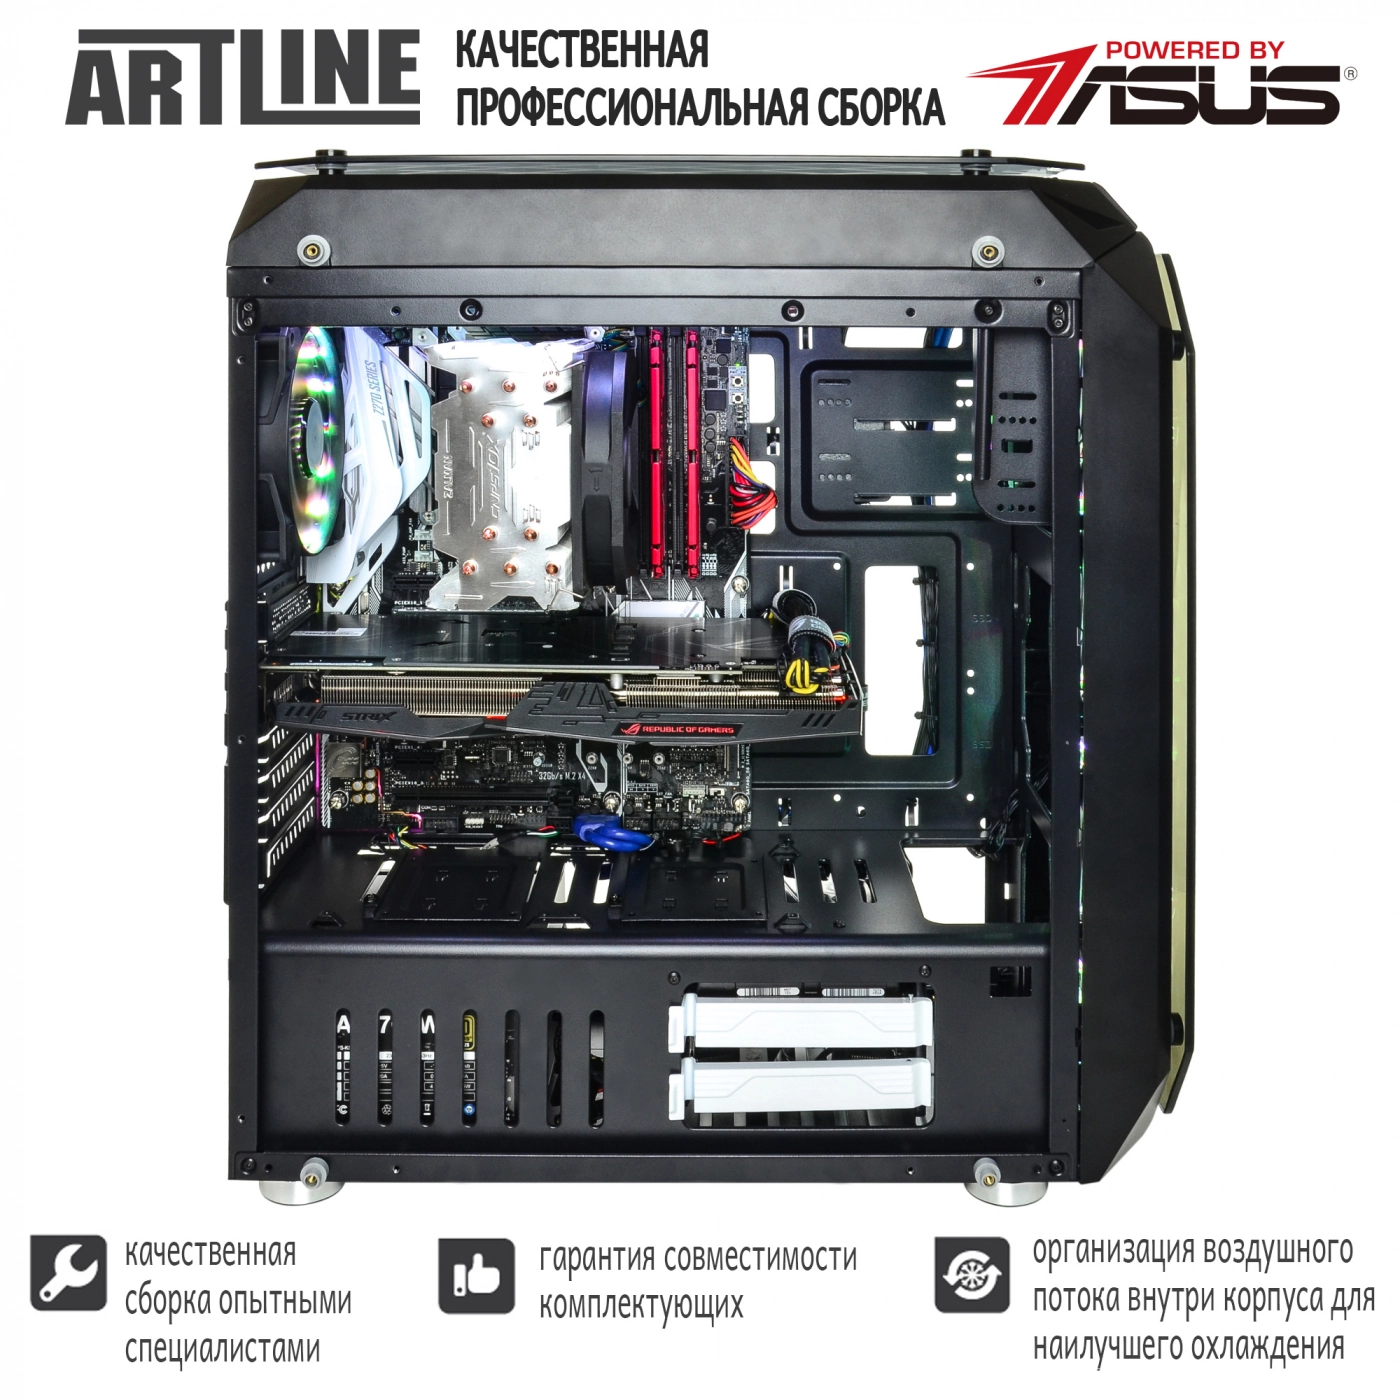 Купить Компьютер ARTLINE Gaming X92v05 - фото 6